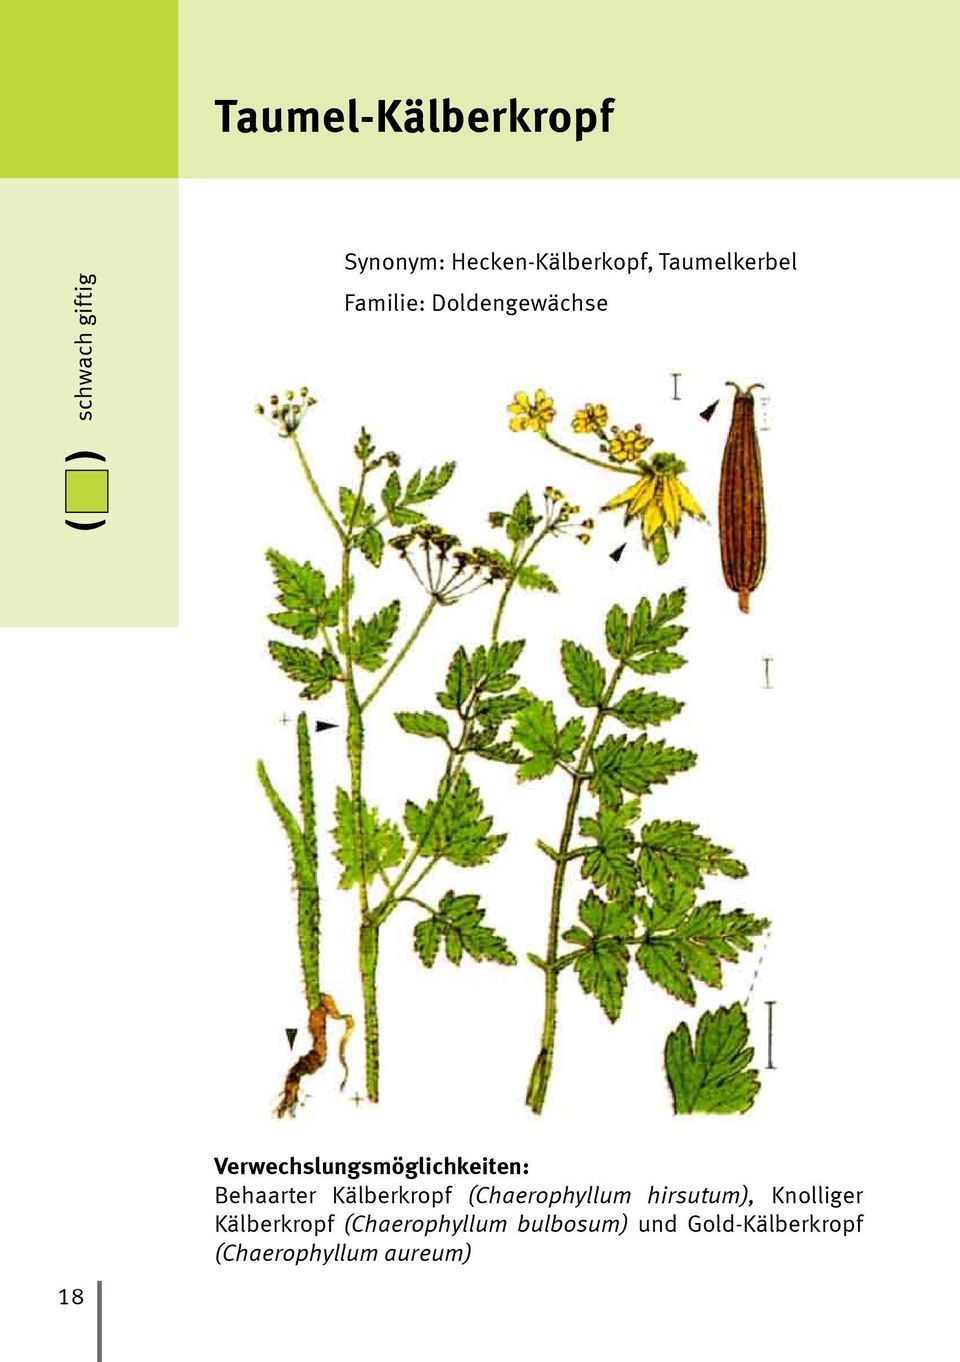 Verwechslungsmöglichkeiten: Behaarter Kälberkropf (Chaerophyllum